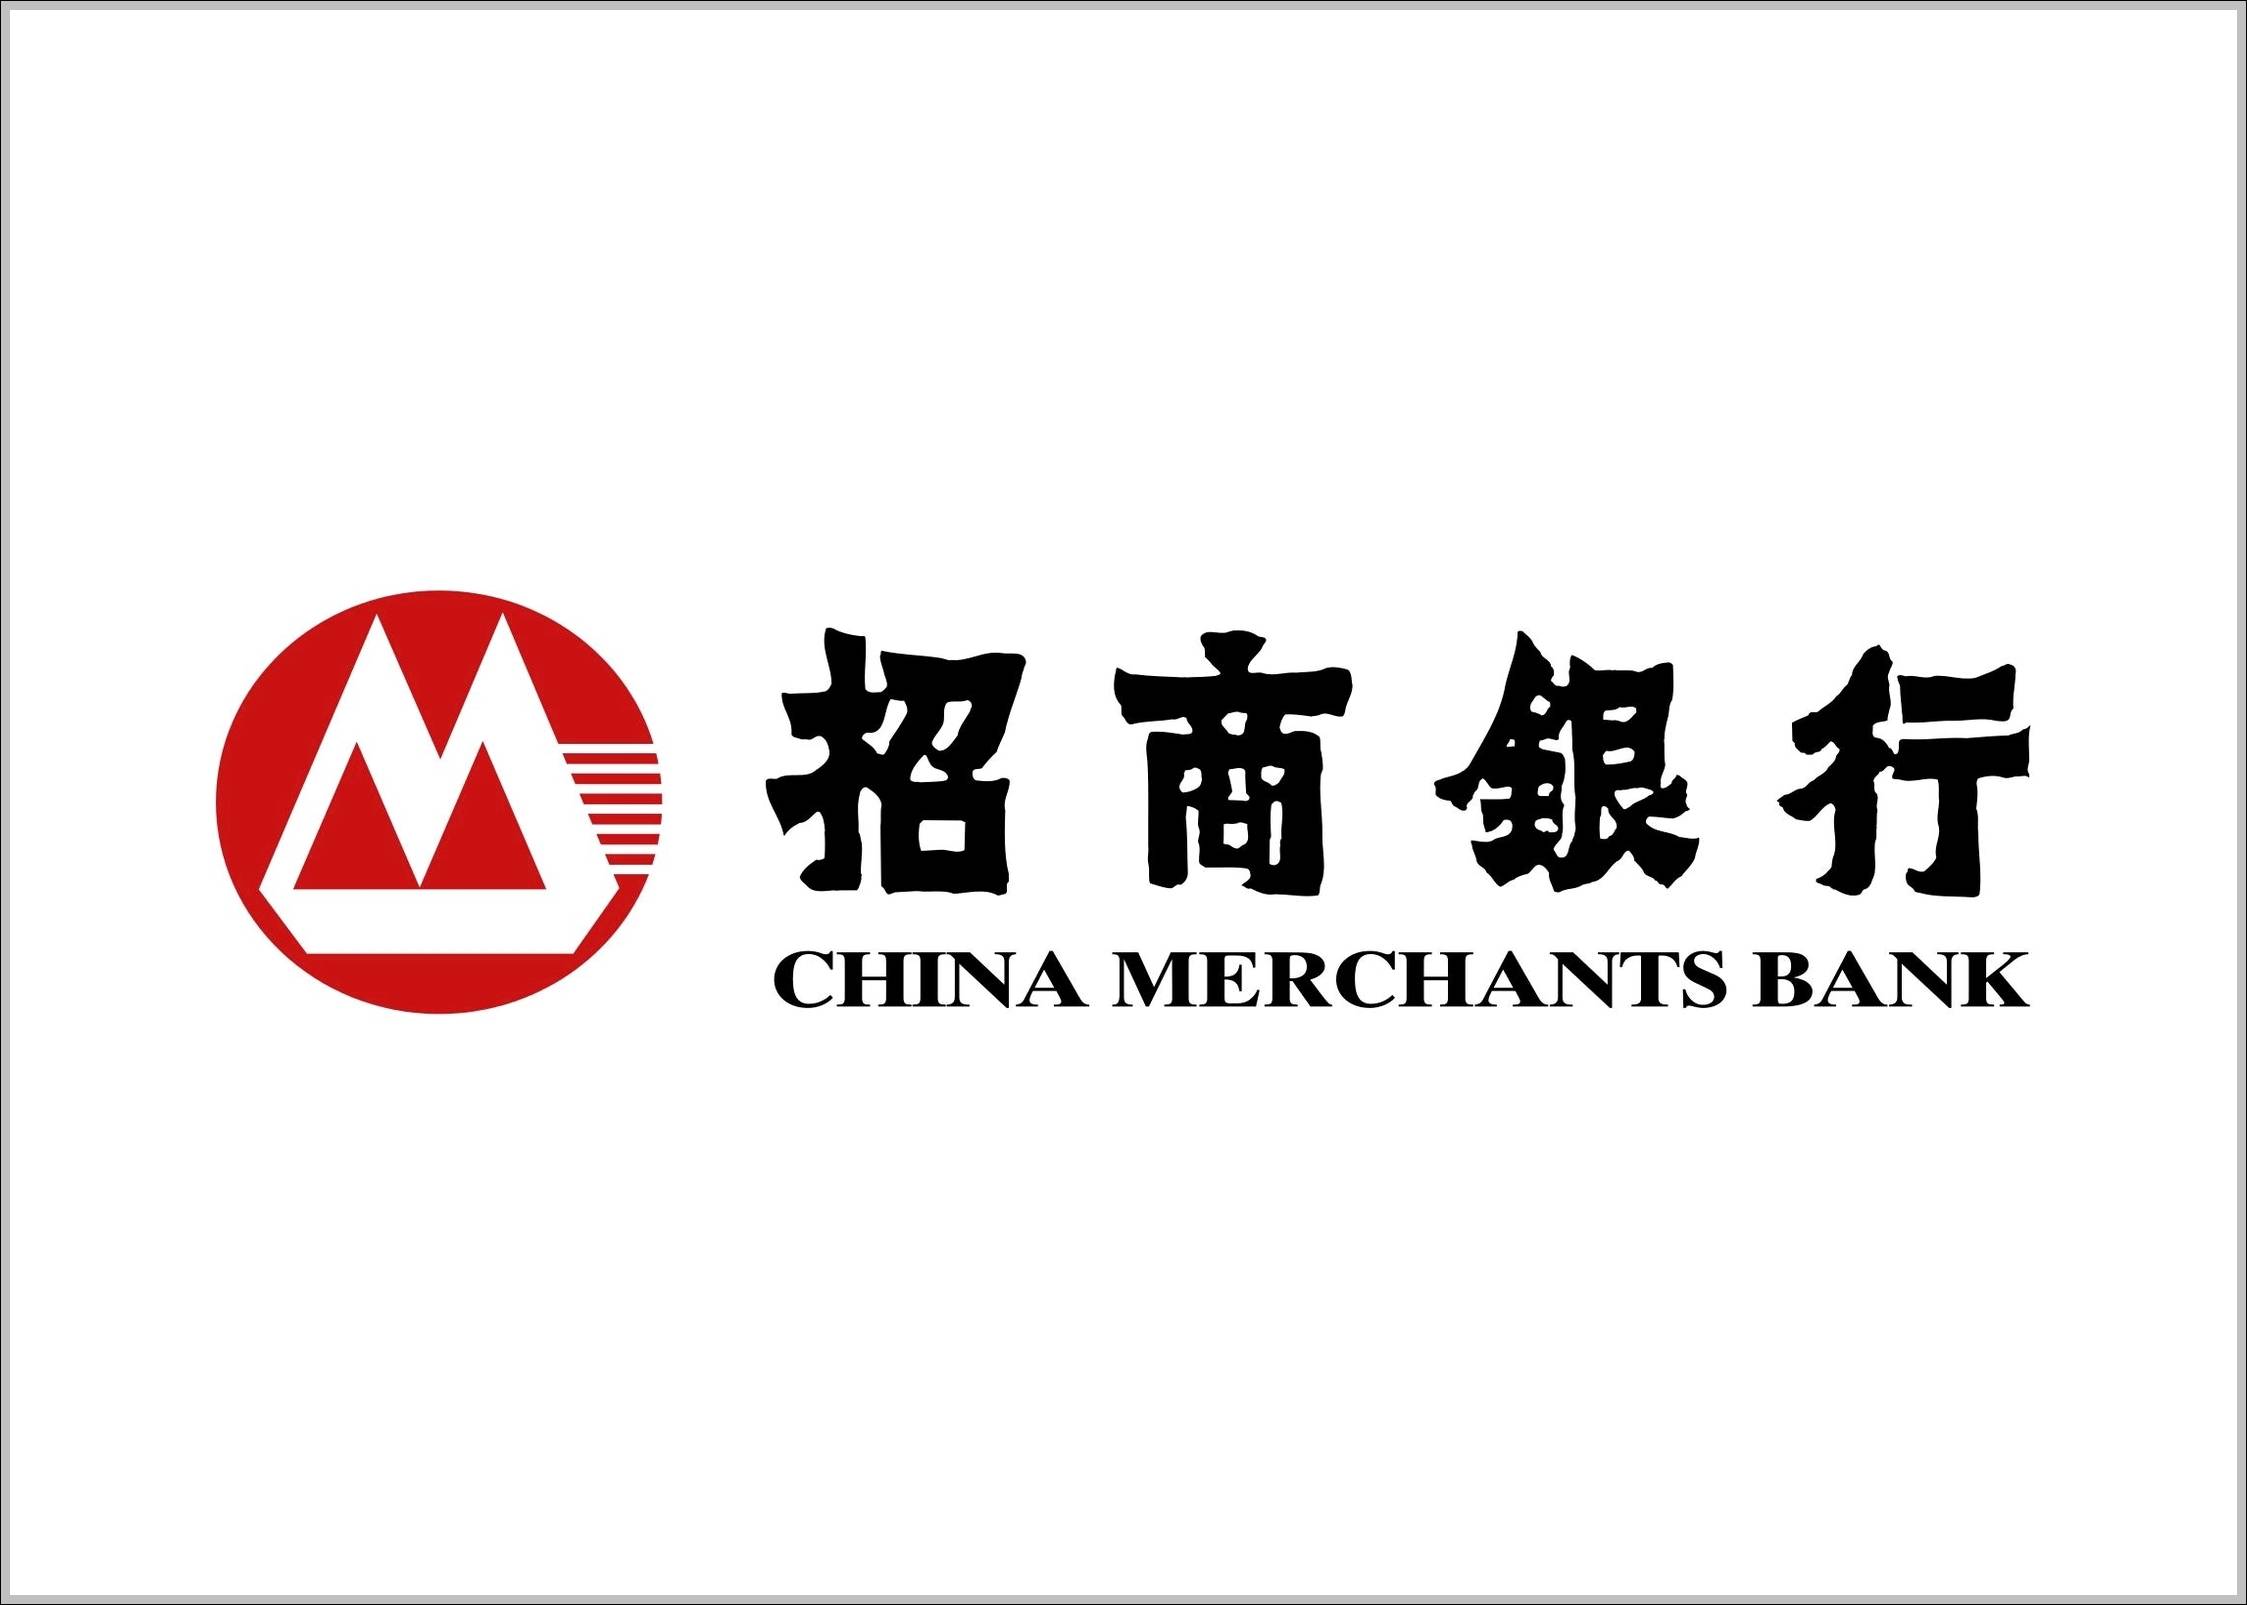 China Merchants Bank sign